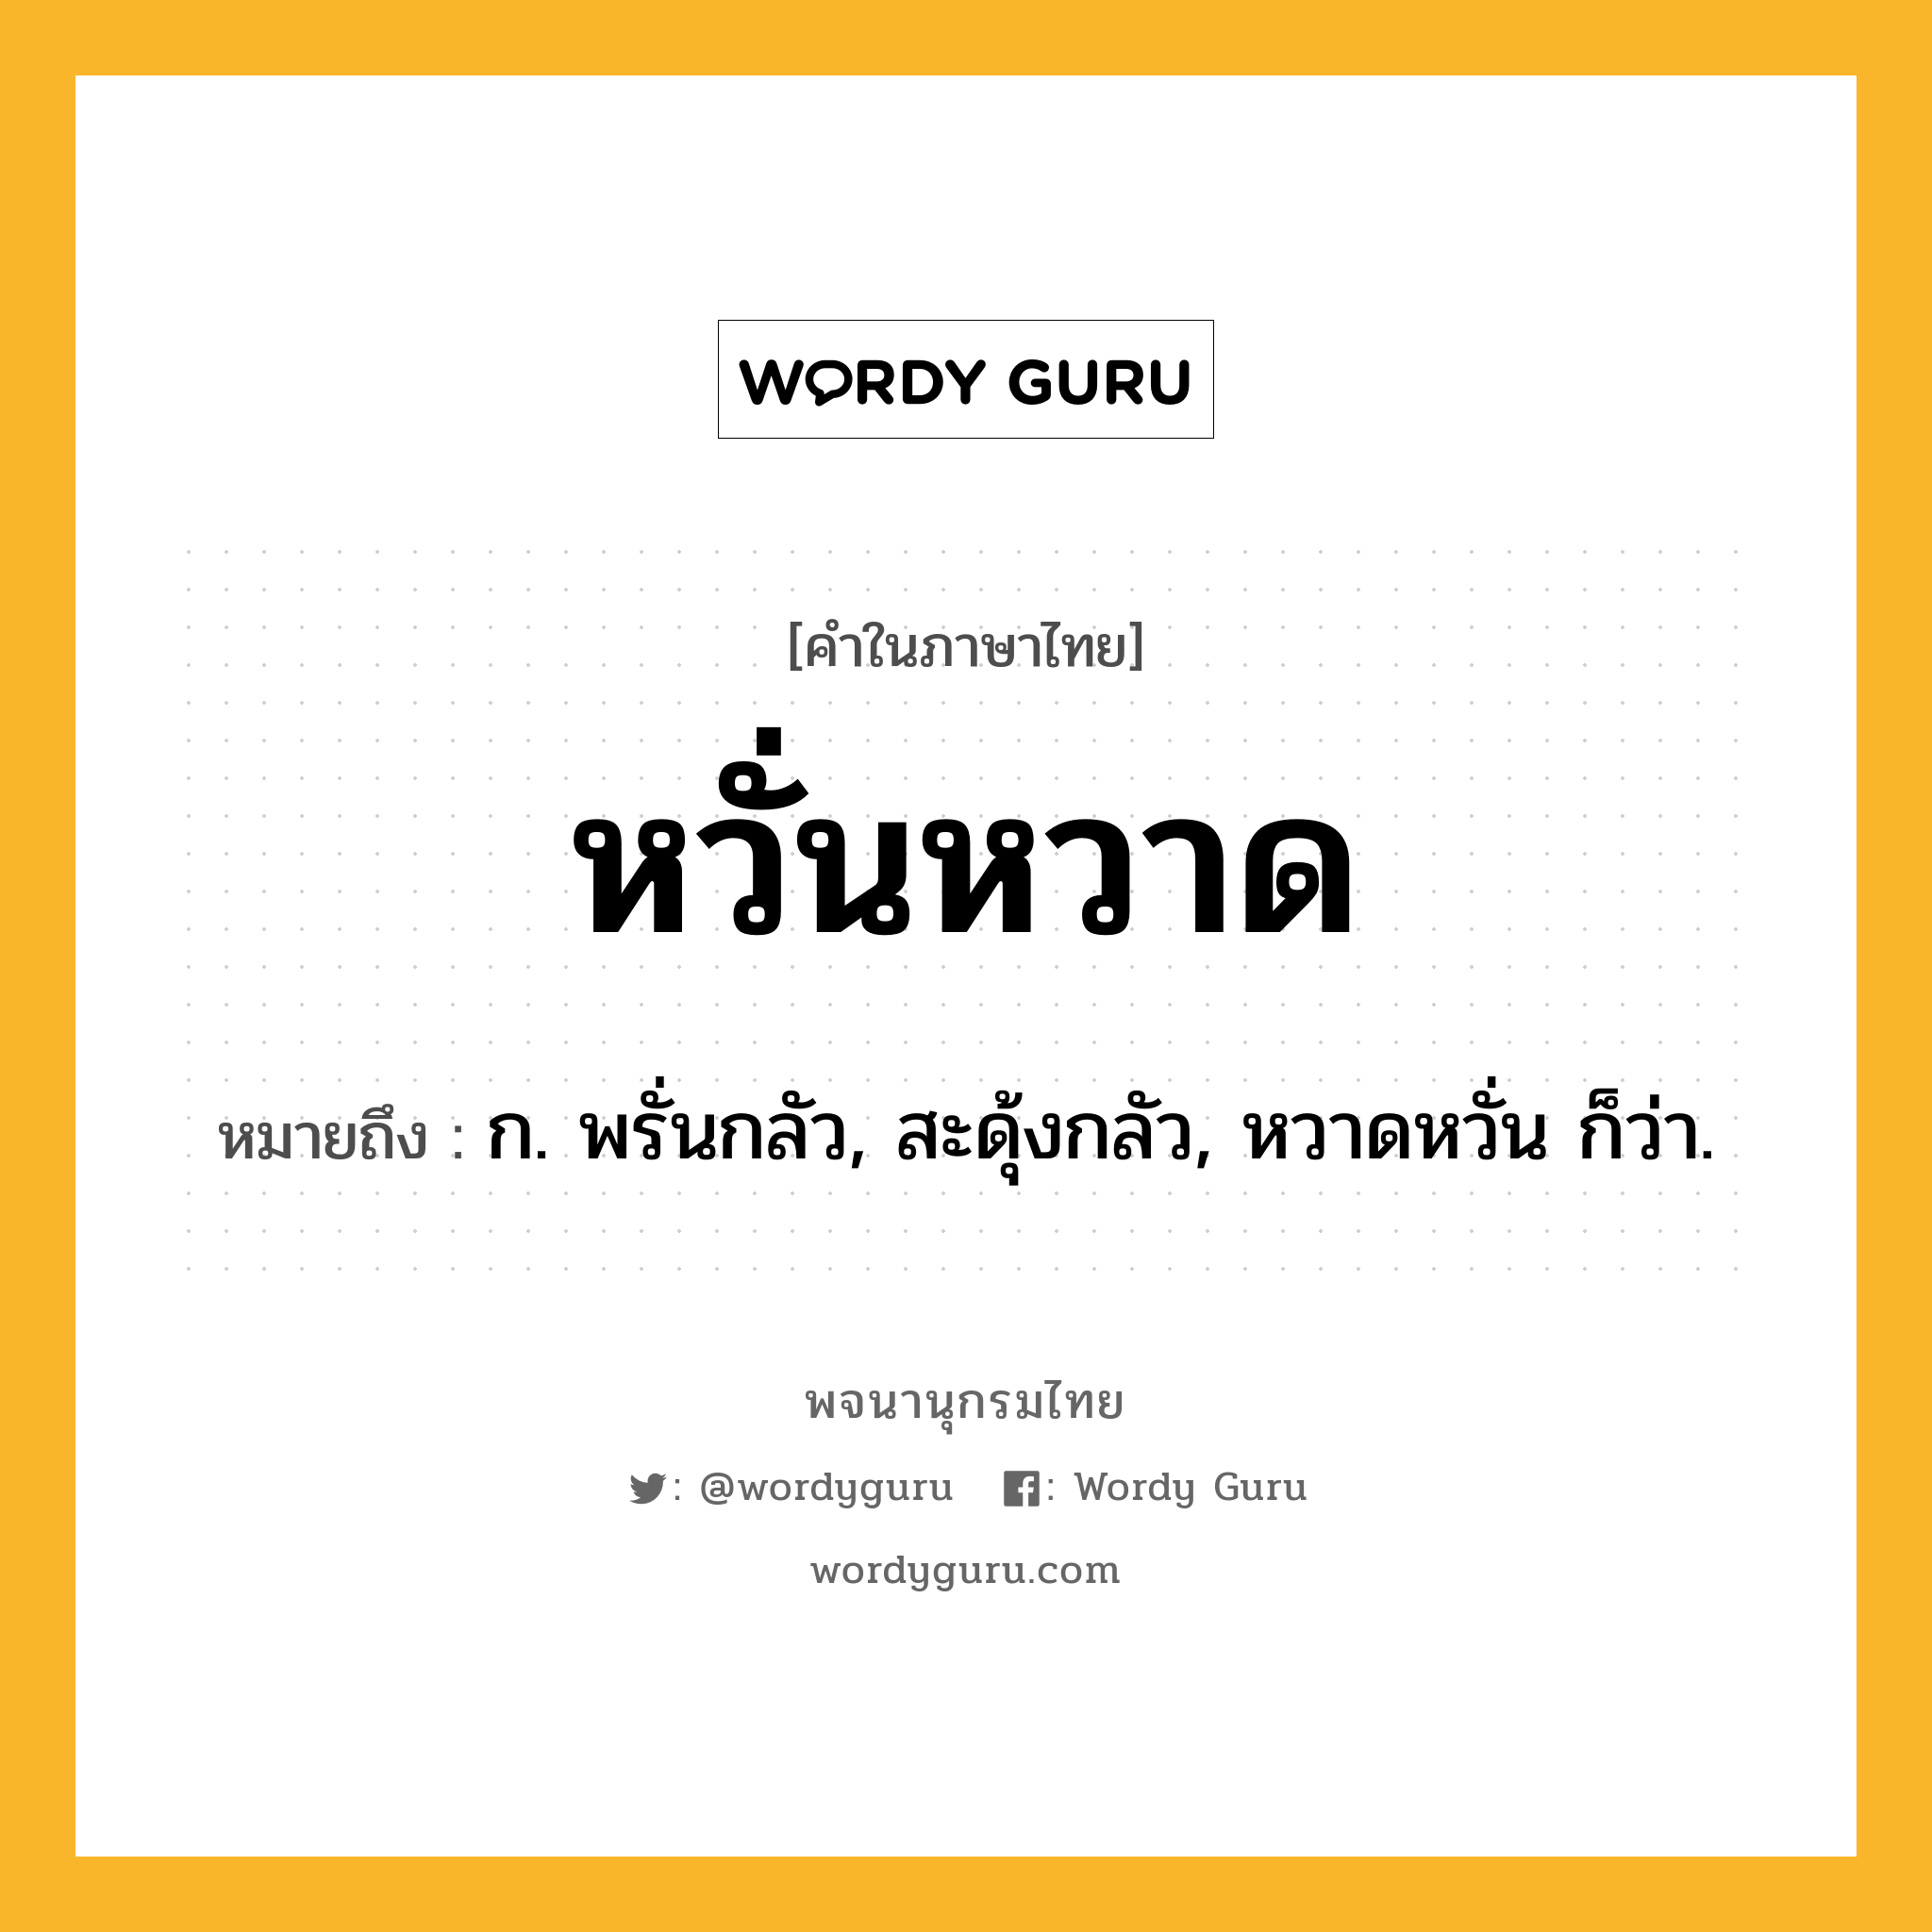 หวั่นหวาด ความหมาย หมายถึงอะไร?, คำในภาษาไทย หวั่นหวาด หมายถึง ก. พรั่นกลัว, สะดุ้งกลัว, หวาดหวั่น ก็ว่า.